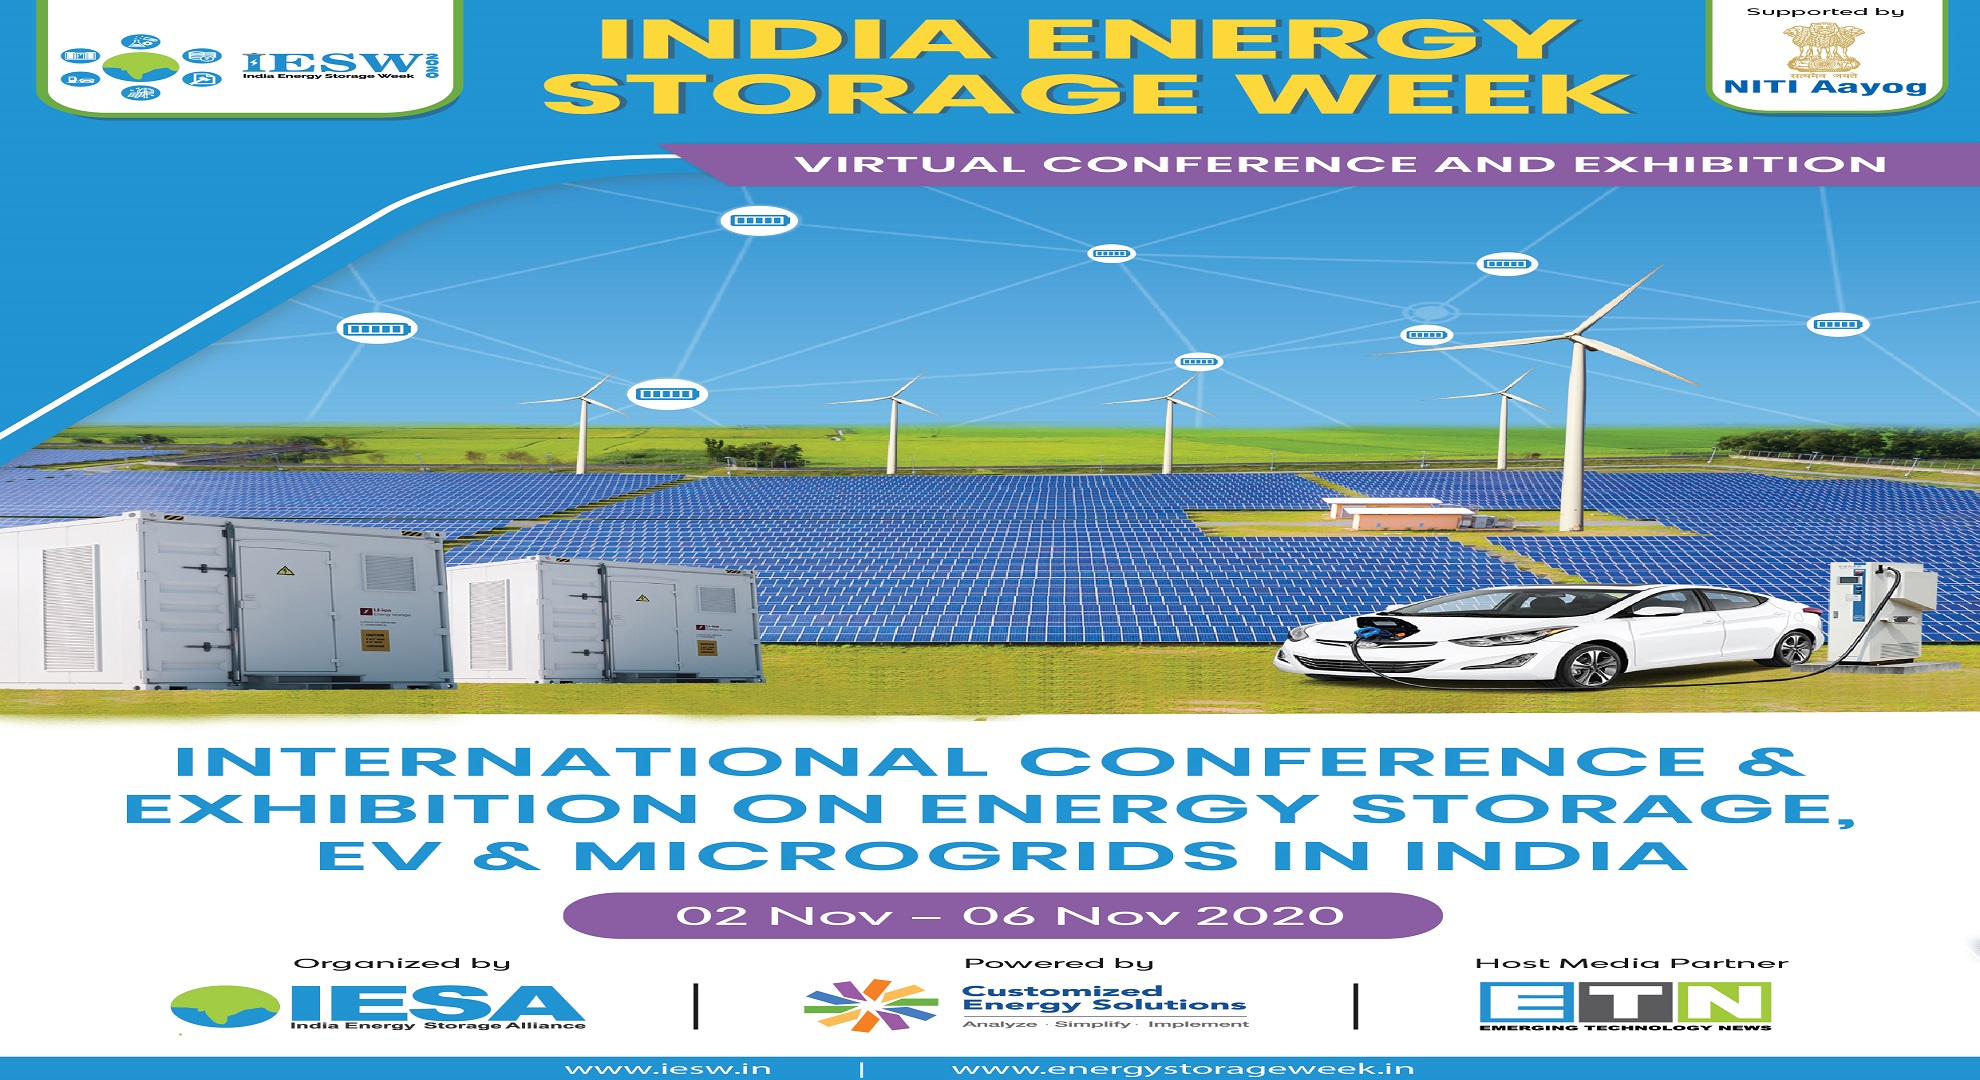 India Energy Storage Week Virtual Conference and Exhibition 2020, Pune, Maharashtra, India